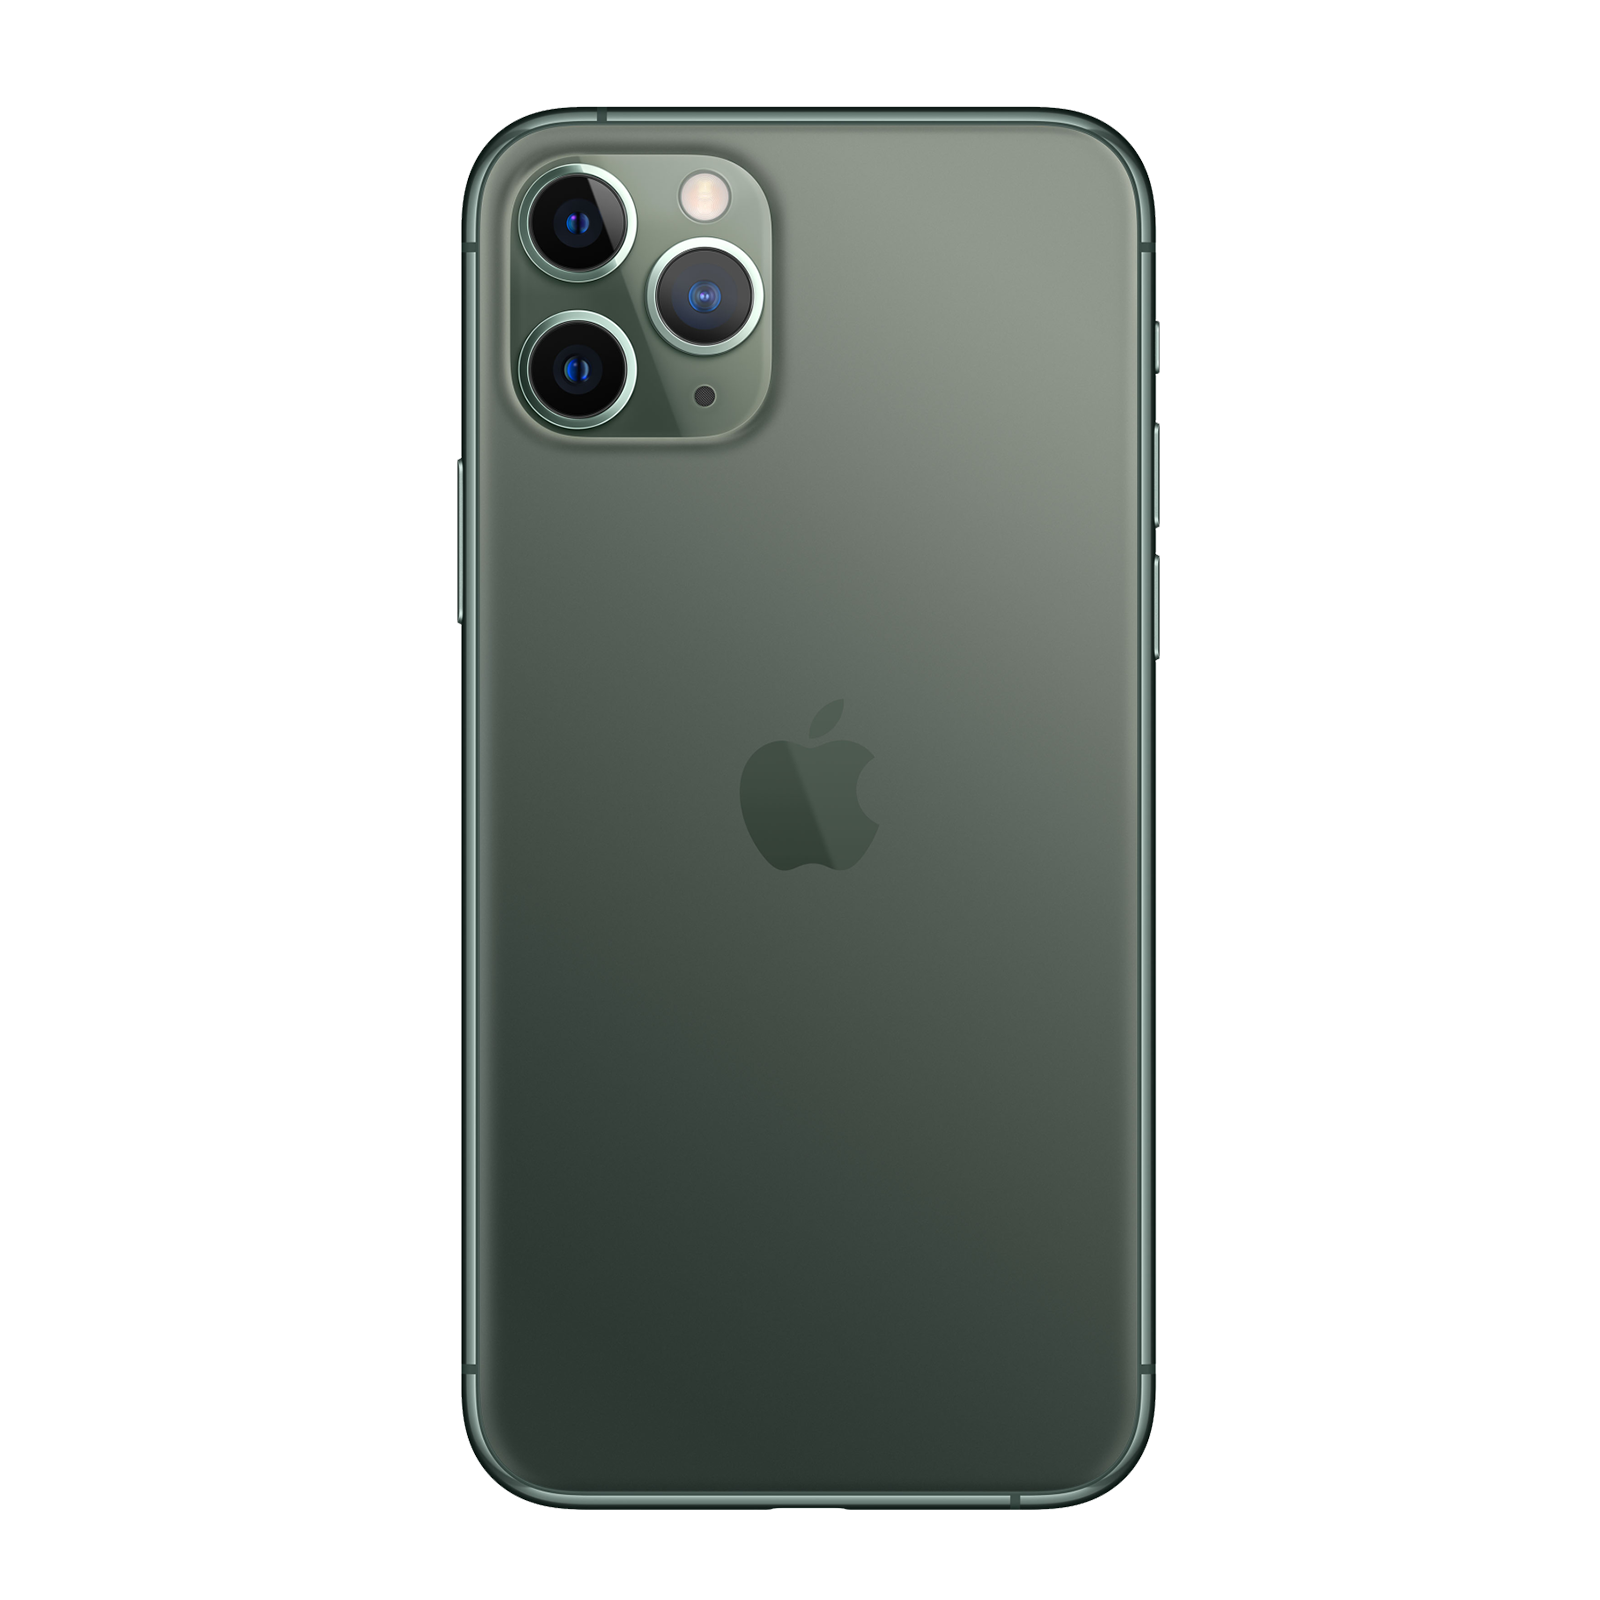 Apple iPhone 11 Pro 256GB Midnight Green Fair - Unlocked